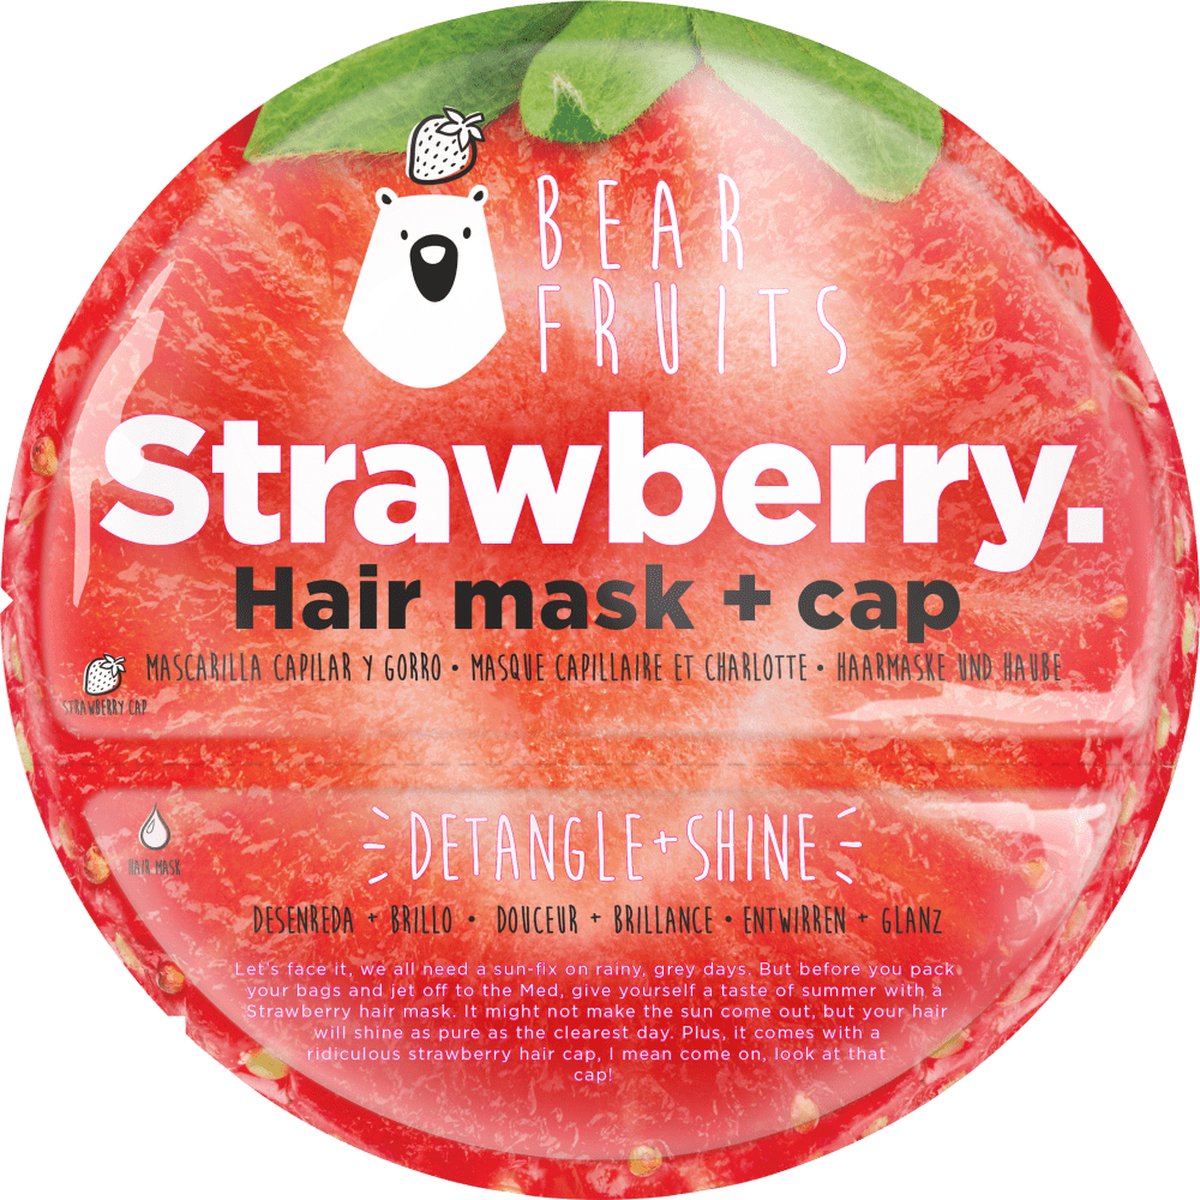 Bear Fruits Masque Capillaire Avocat + Bonnet